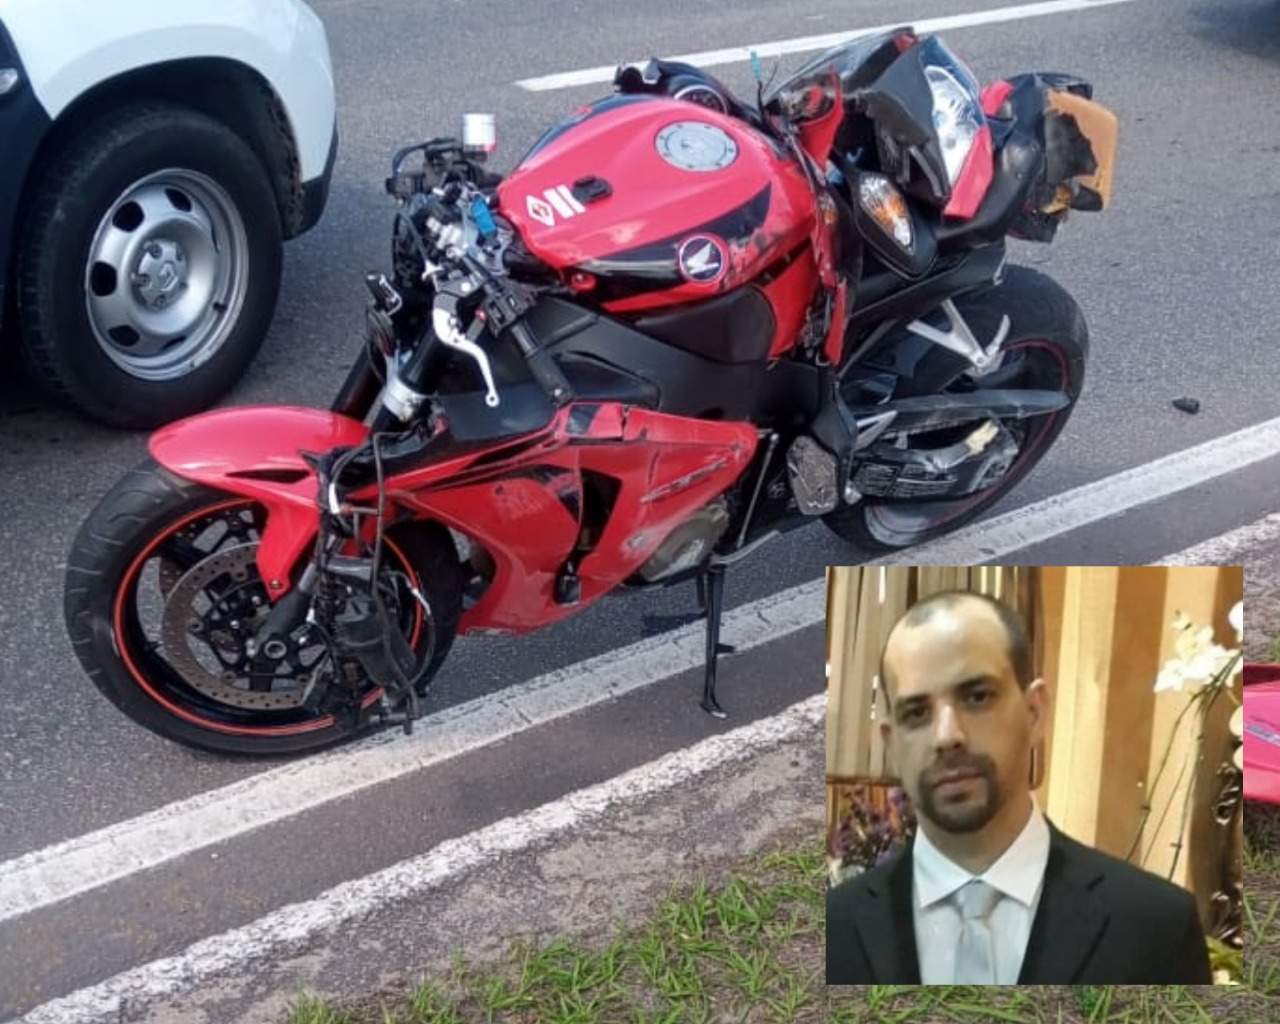 Morre segundo piloto vítima de acidente em corrida de motos em